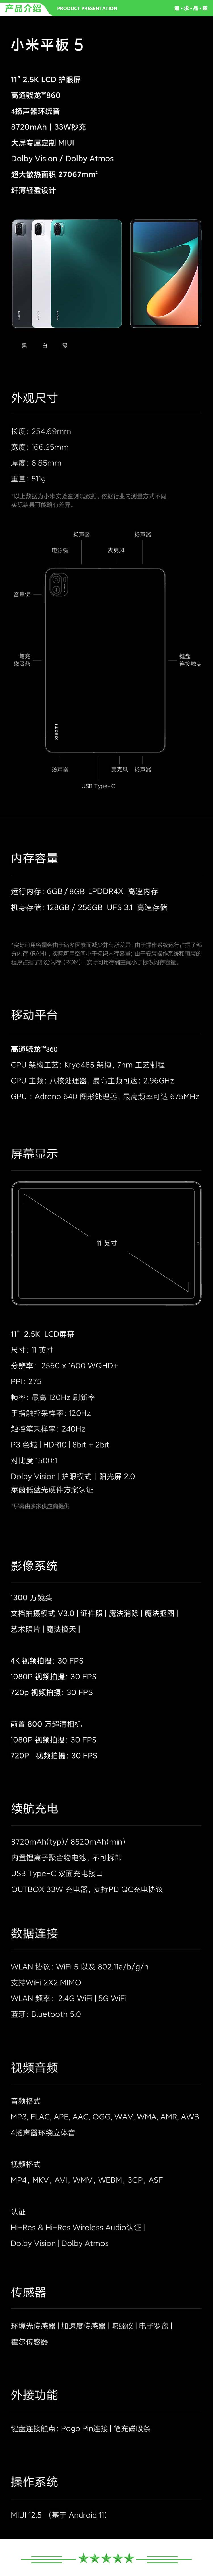 小米 xiaomi 平板5 平板电脑（11英寸2.5K高清 120Hz 骁龙860 8G+256GB 33W快充 杜比影音娱乐办公 绿色）+ 键盘套装.jpg